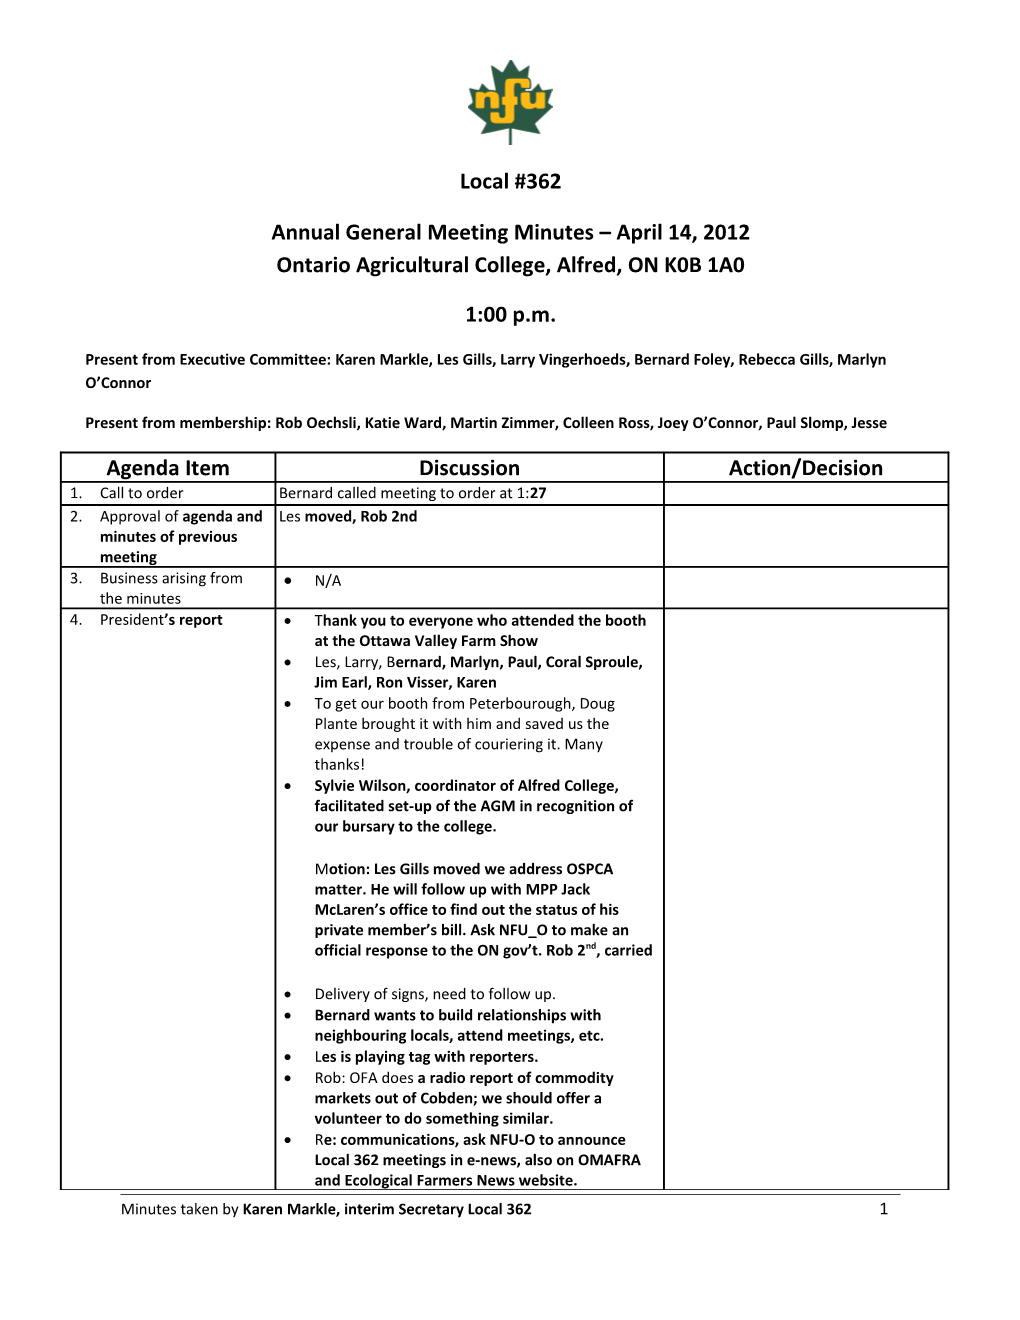 Executive Meeting Minutes September 21, 2011